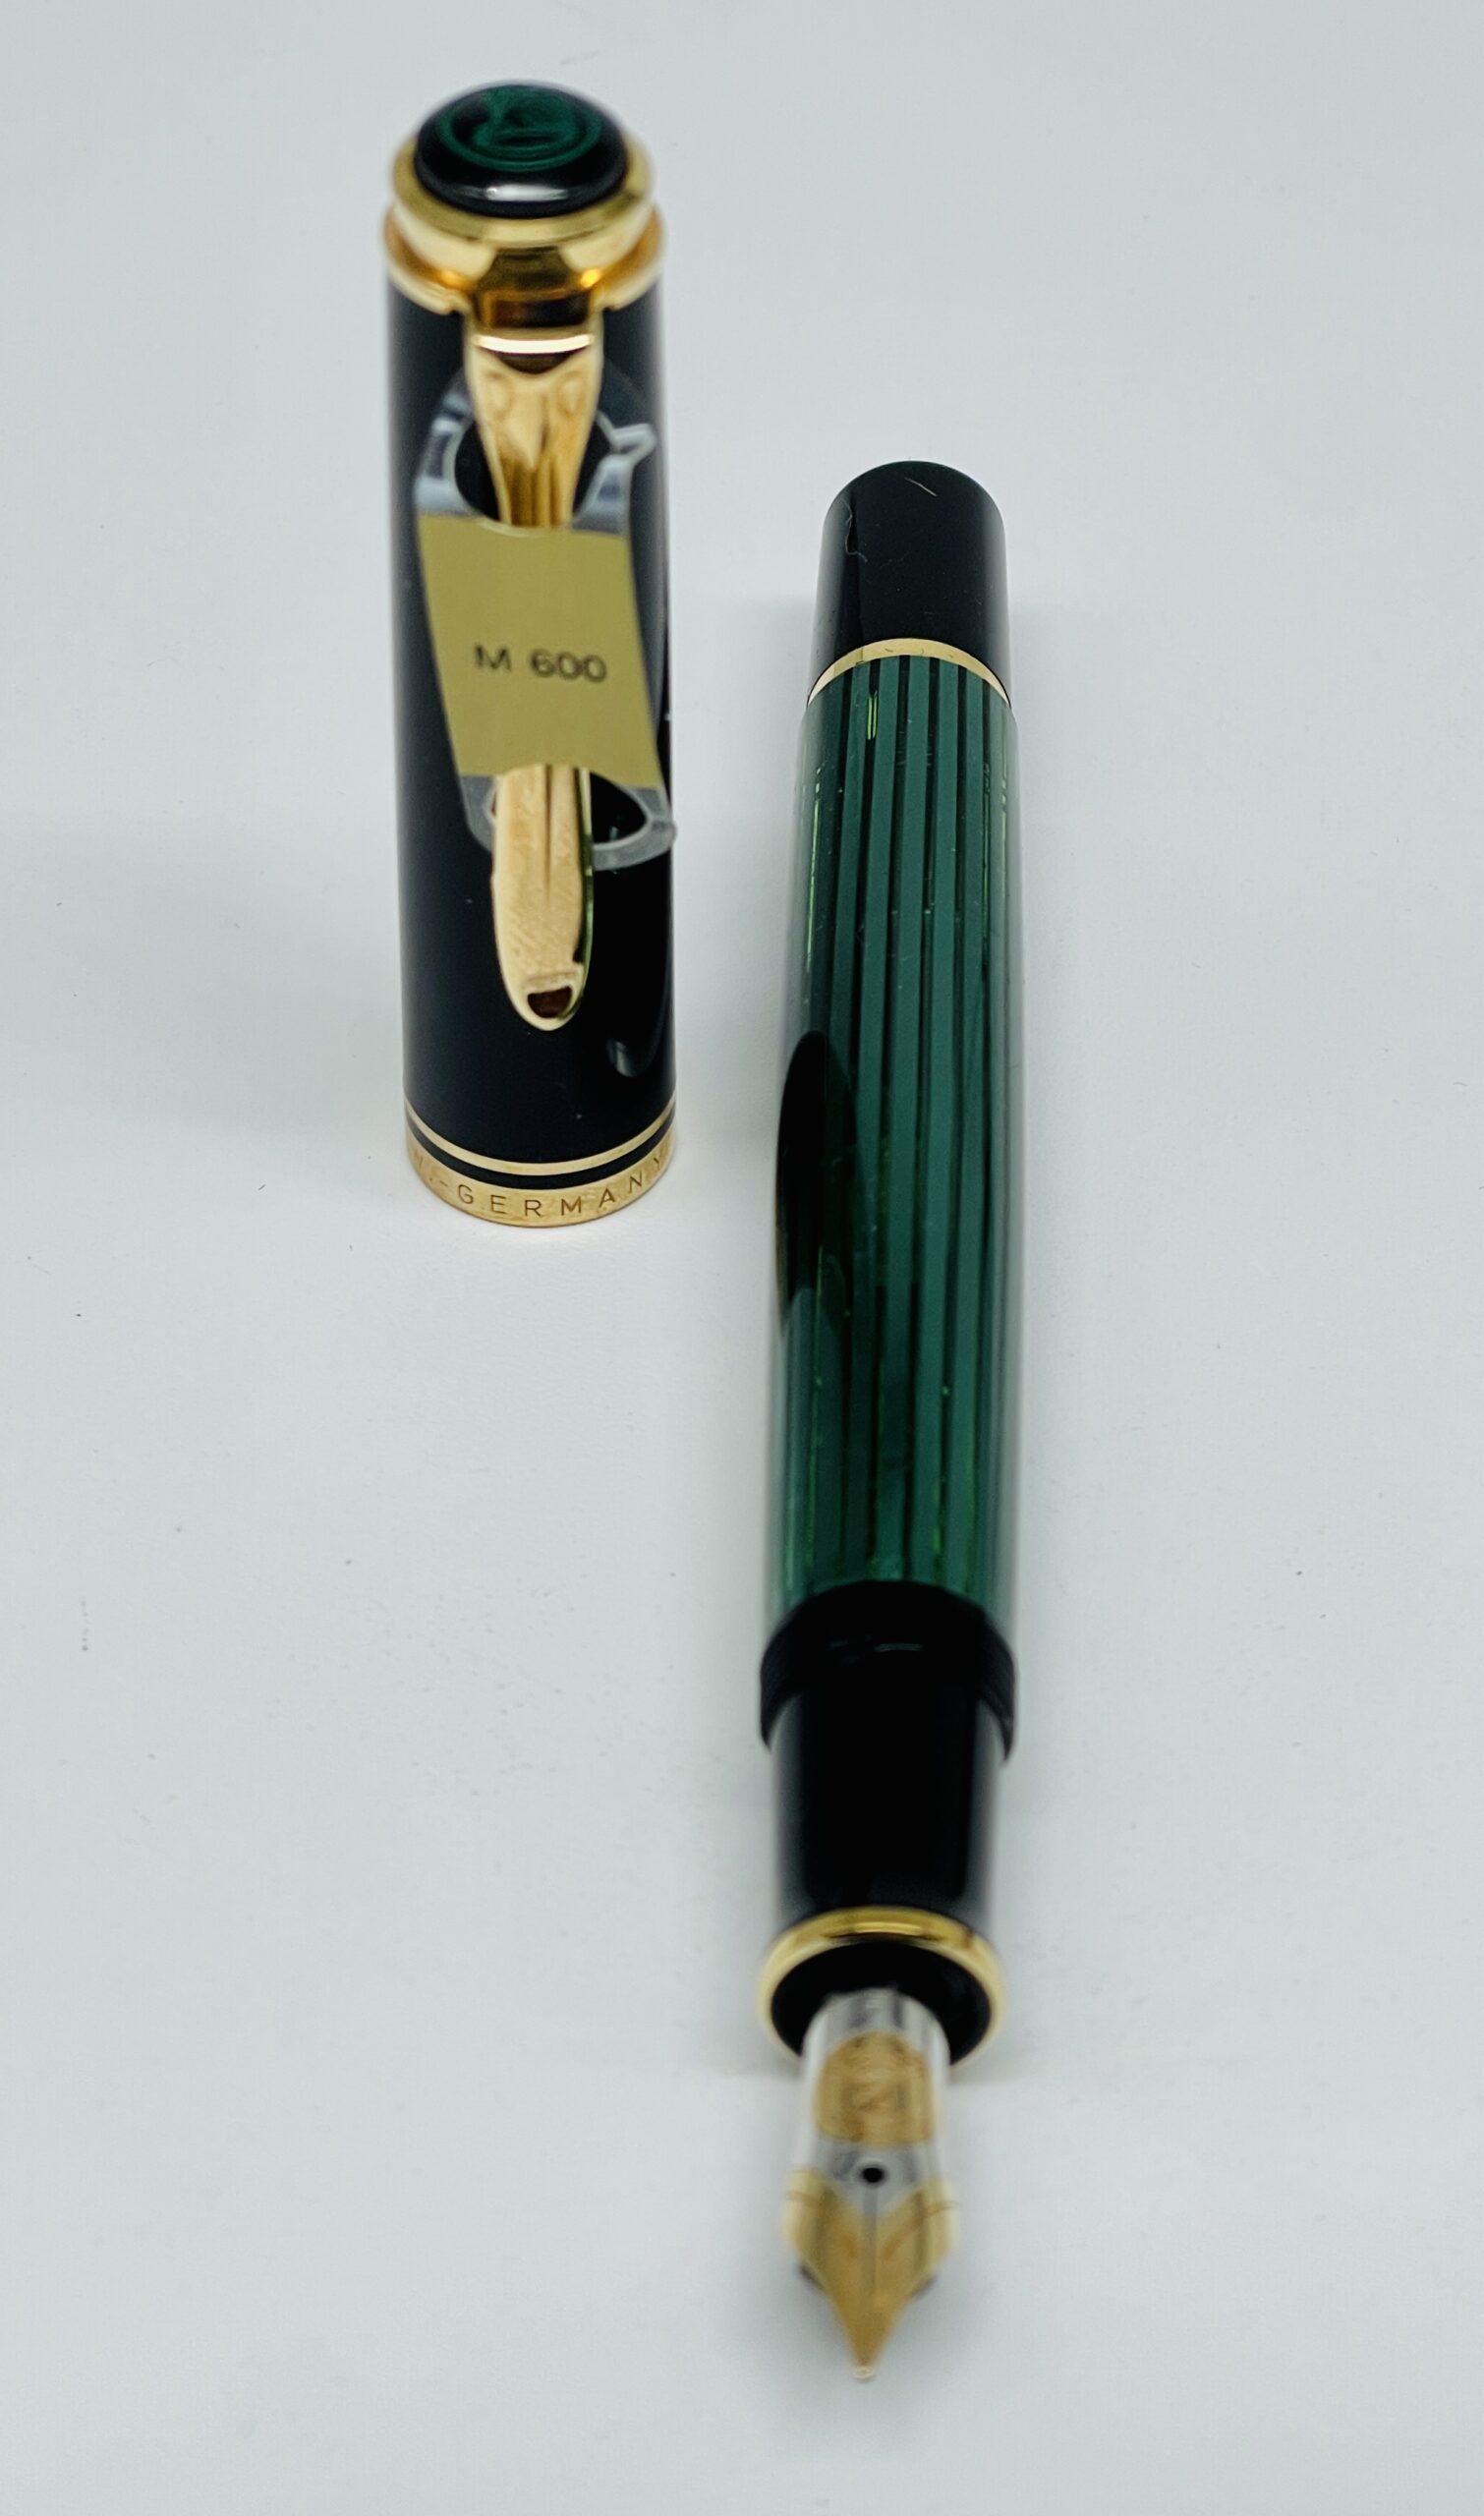 Penna Stilografica Pelikan 120 verde e nera - Antica Cartotecnica